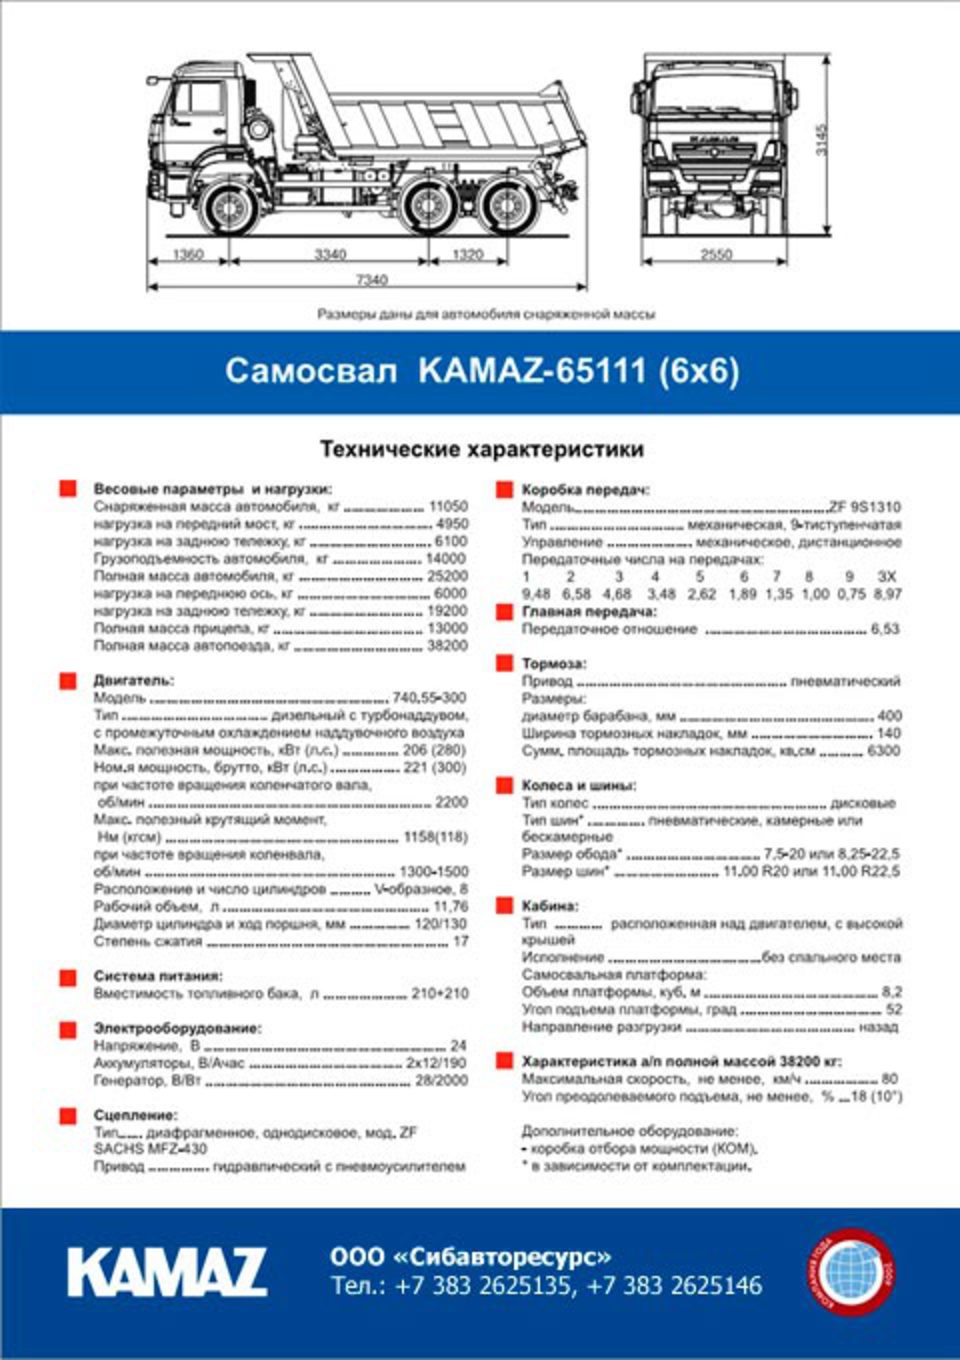 Сколько надо камазов. КАМАЗ-6460 седельный тягач габариты. КАМАЗ 65222 самосвал ТТХ. КАМАЗ 65111 самосвал технические характеристики. КАМАЗ 6522 самосвал технические характеристики.